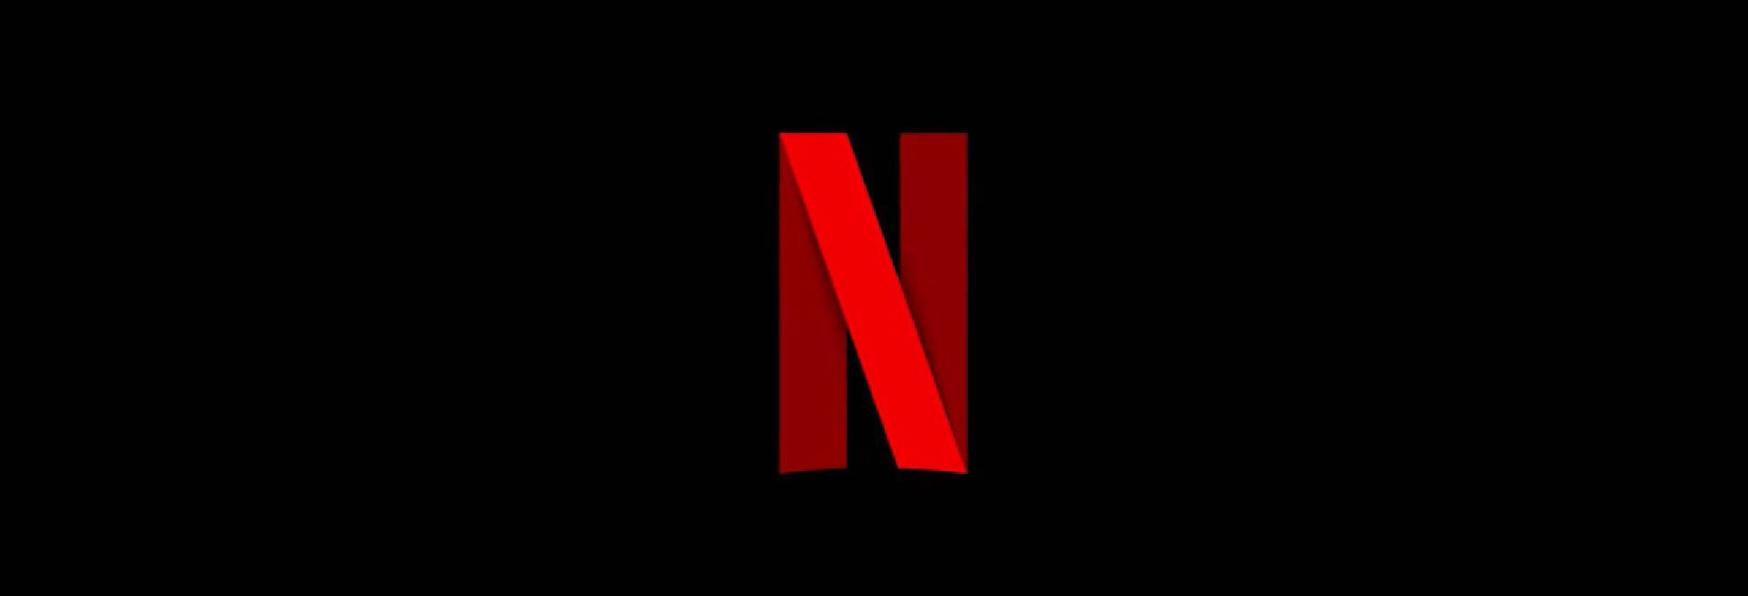 Netflix: Decine di Serie TV attendono ancora il Verdetto sul Rinnovo o Cancellazione